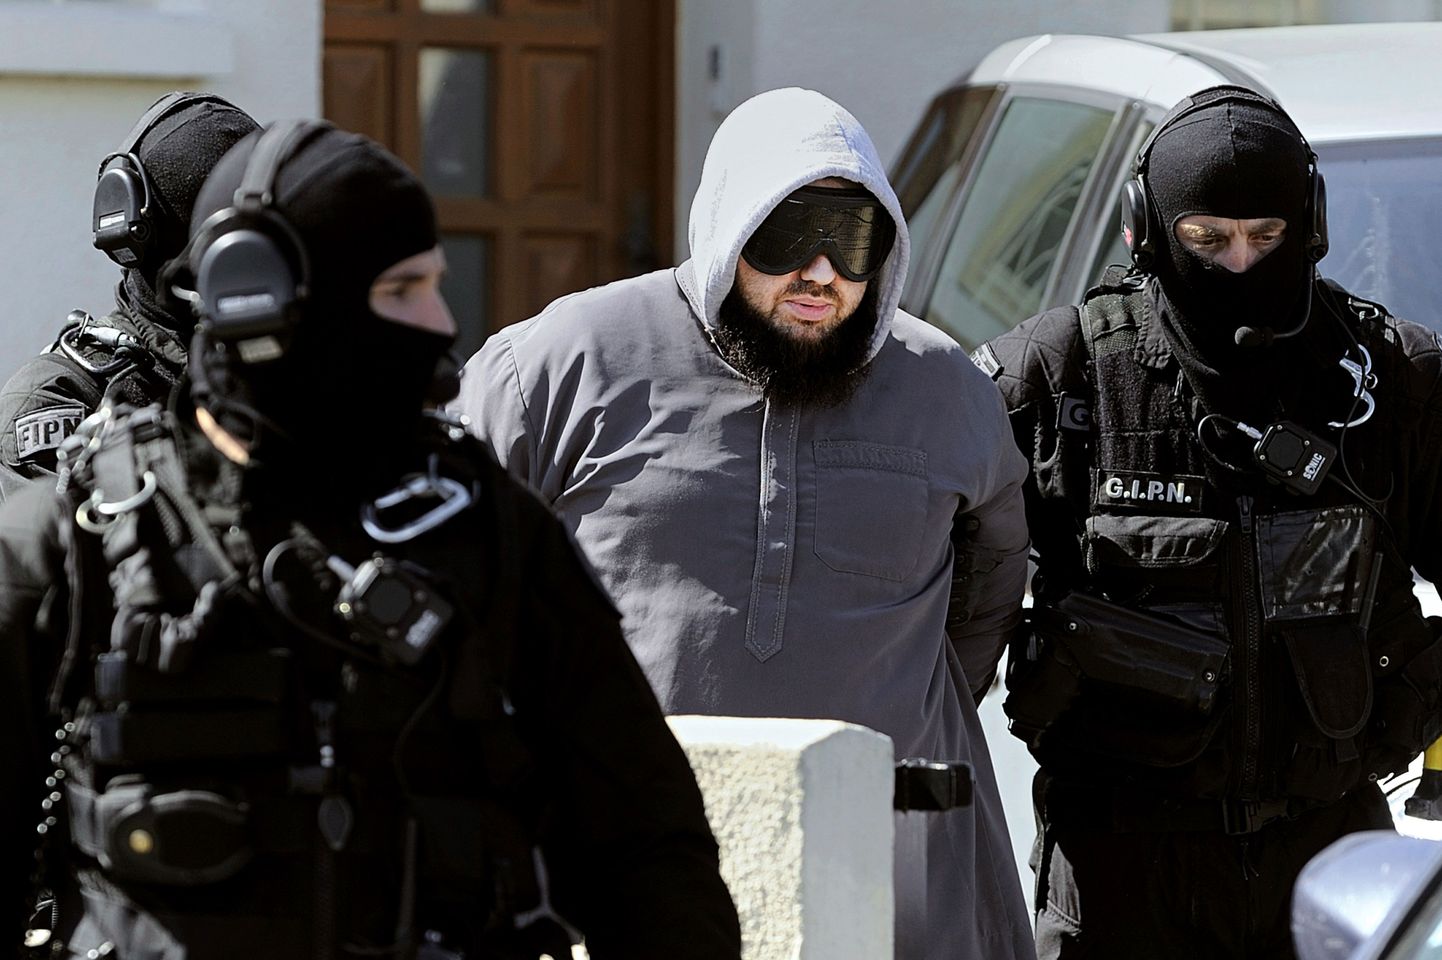 Prantsuse politsei eriüksuslased arreteerisid möödunud reedel teiste seas ka islamistliku rühmituse Forsane Alizza liidri Mohamed Achamlane'i.